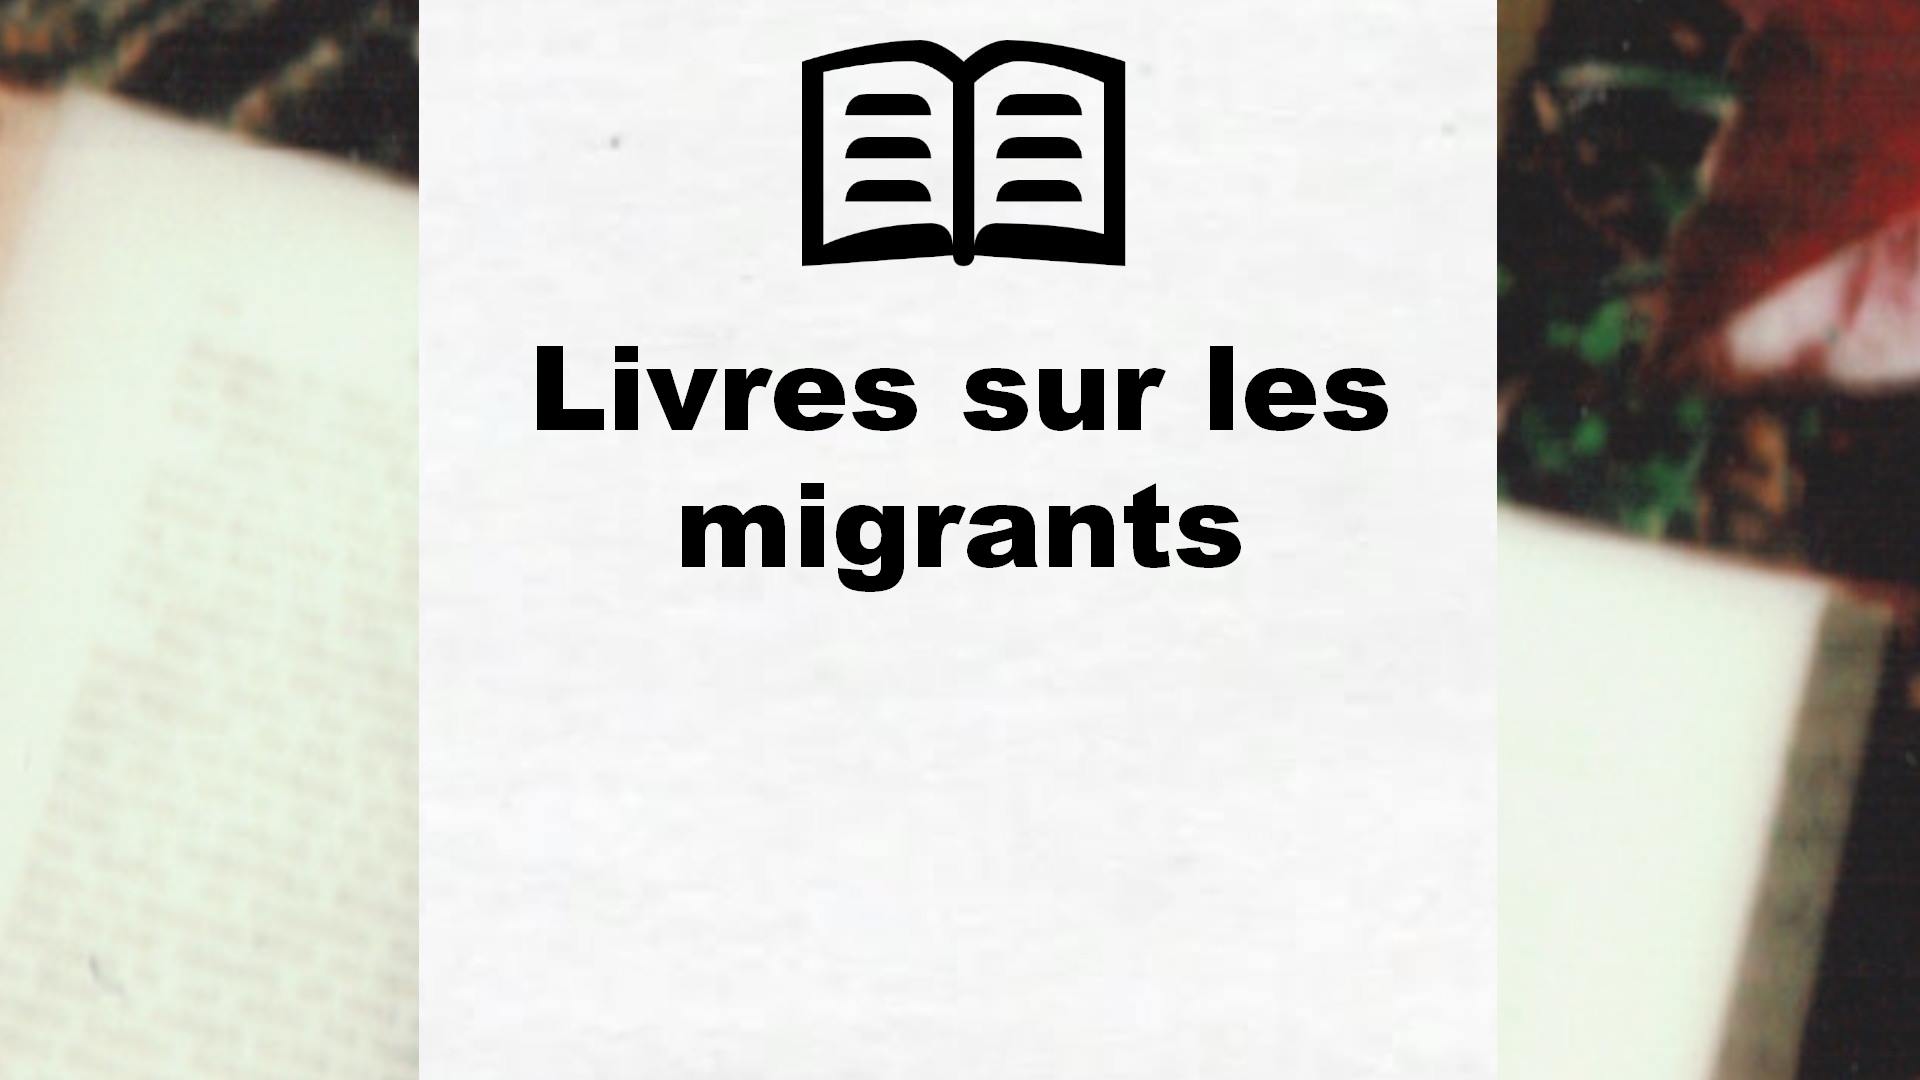 Livres sur les migrants